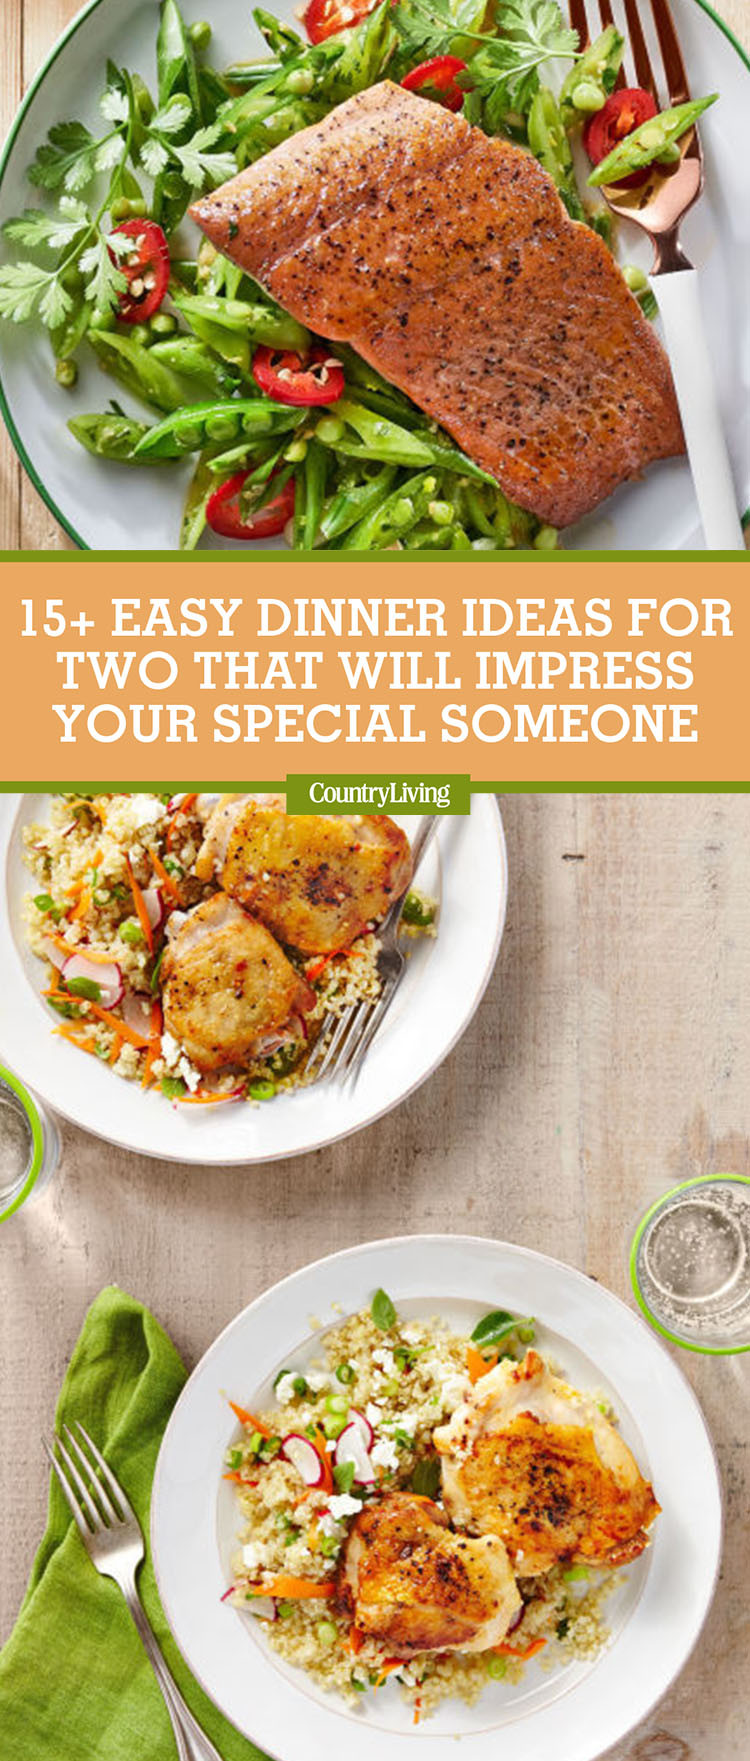 Dinner Ideas For 2
 17 Easy Dinner Ideas for Two Romantic Dinner for Two Recipes